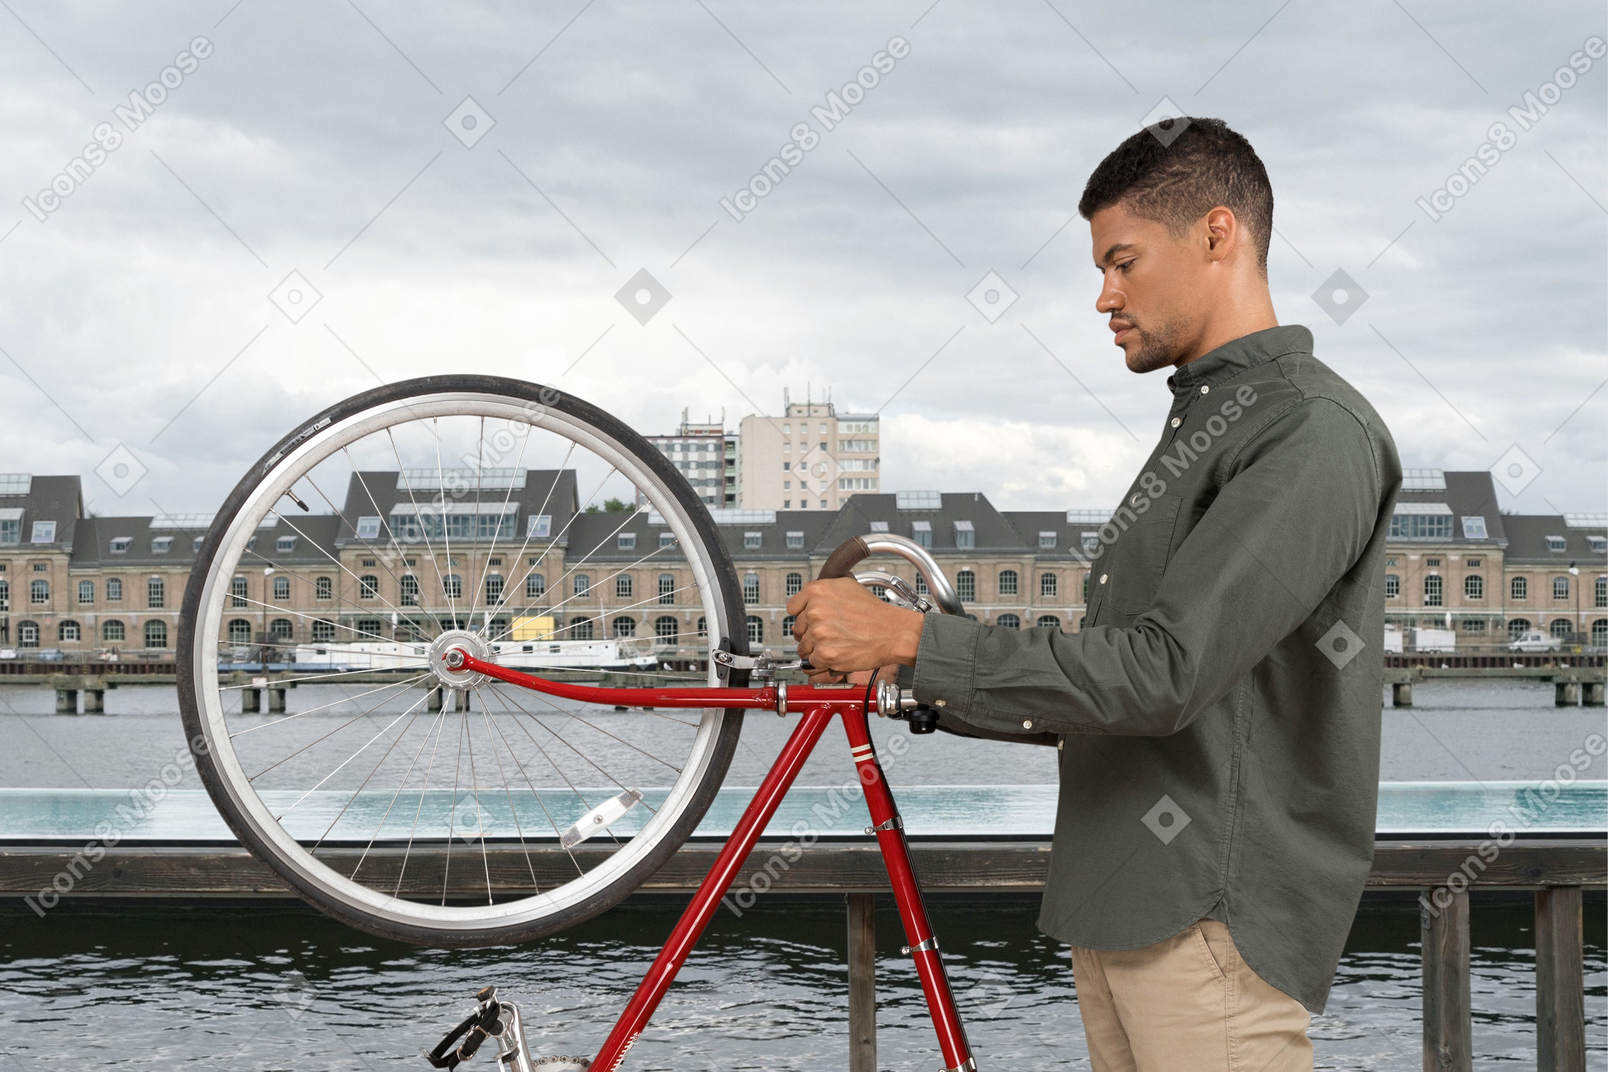 Mann, der mit seinem fahrrad auf einer brücke steht